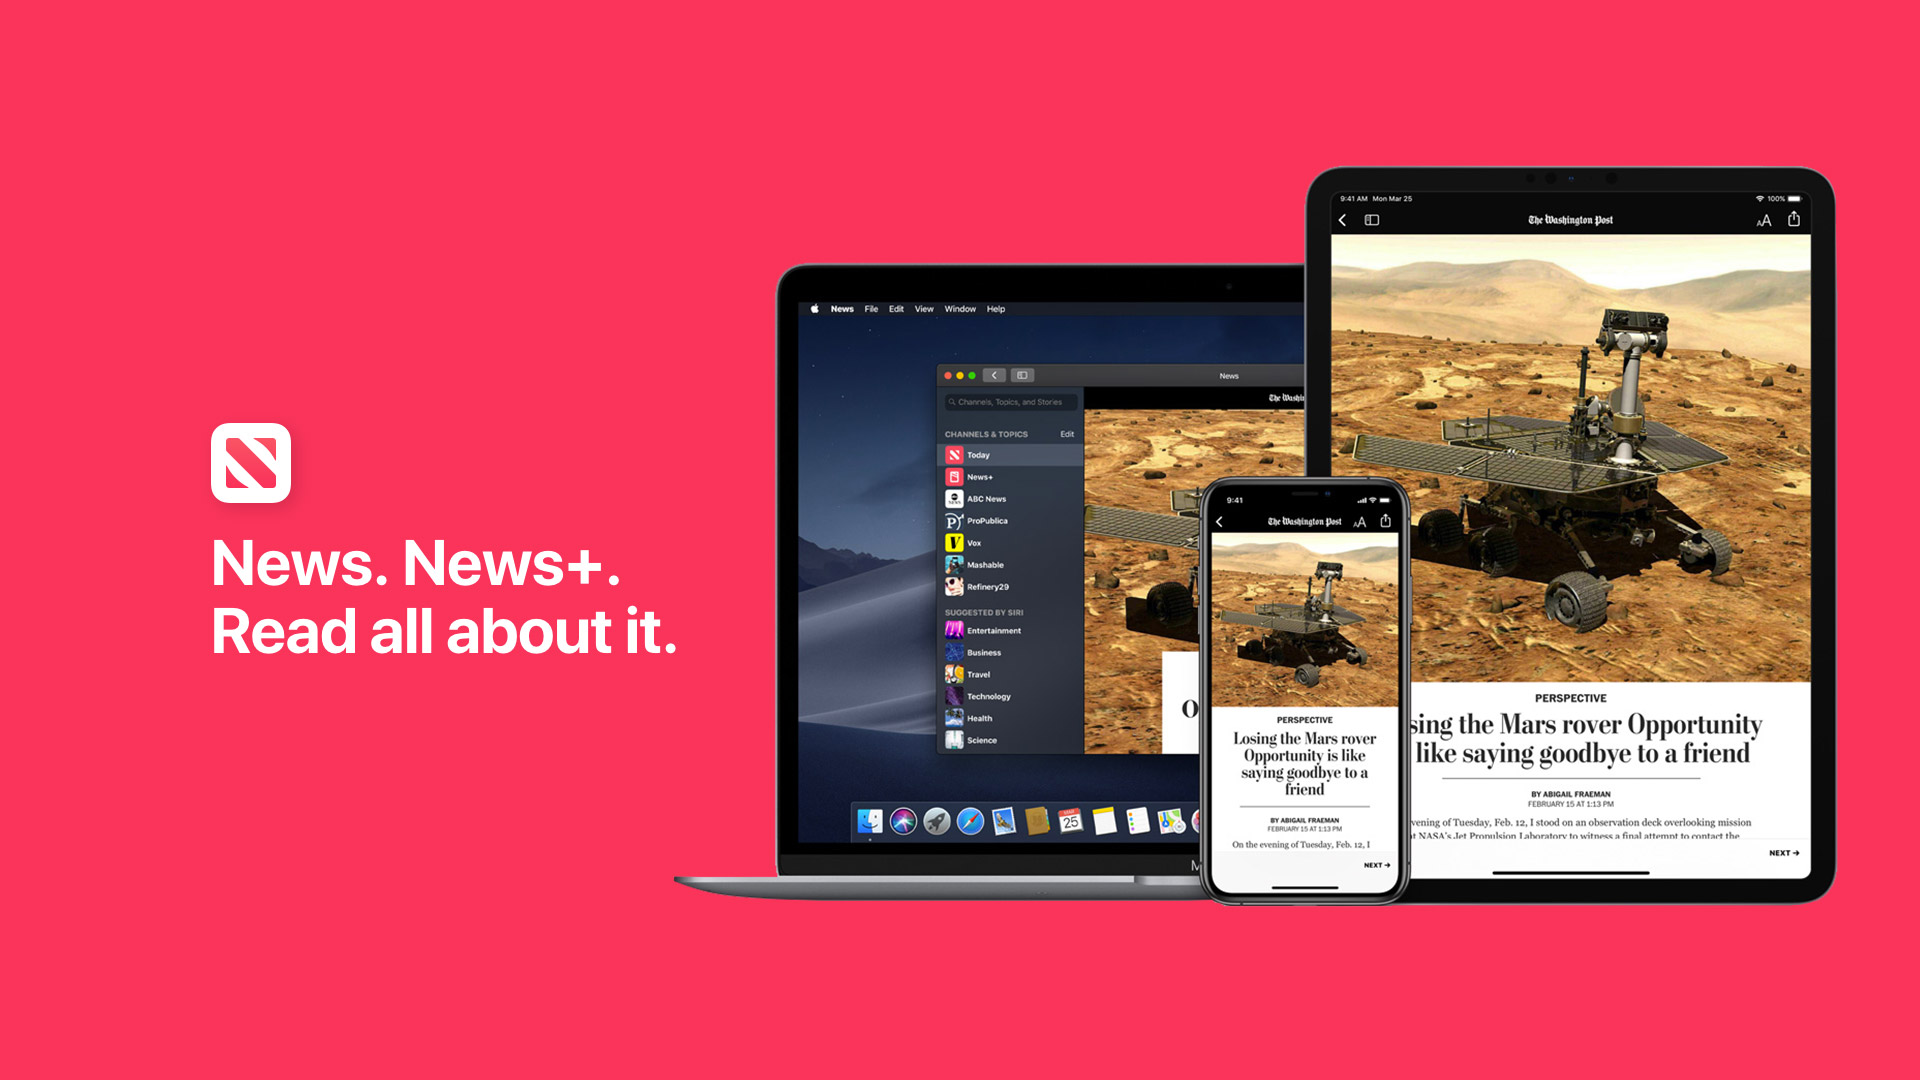 Apple News +